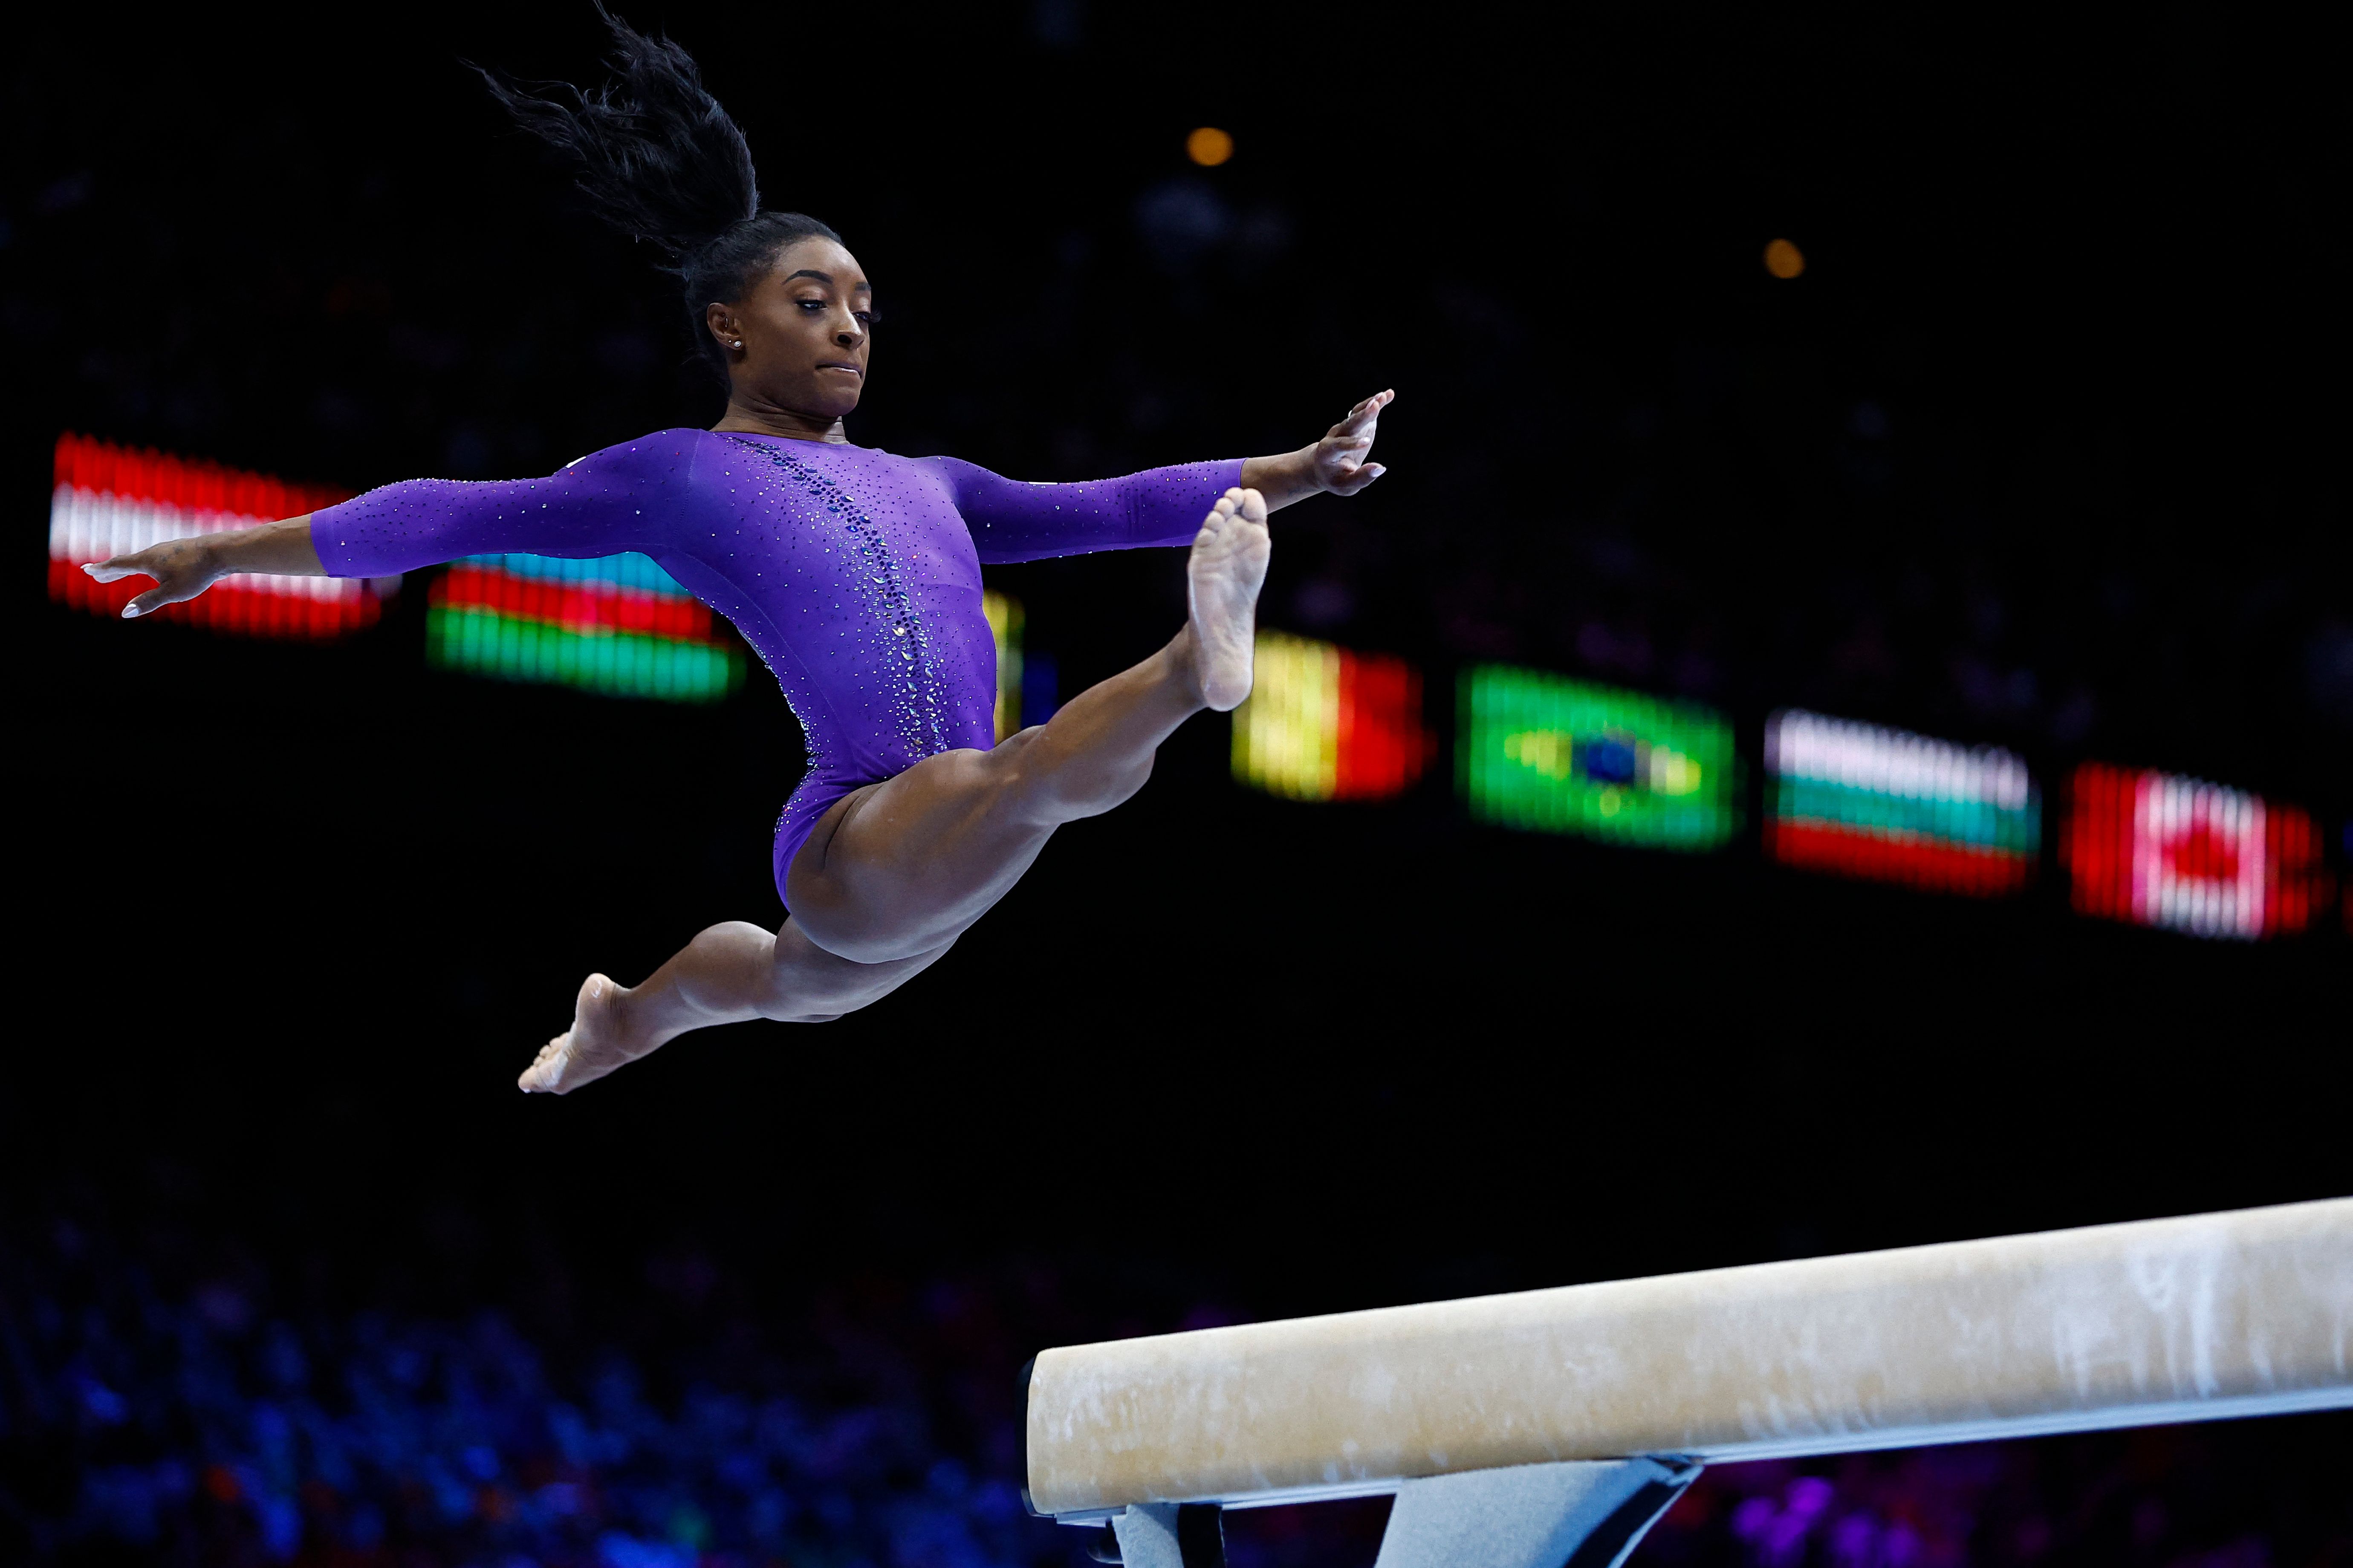 La atleta estadounidense, Simoen Biles, compite en la fina de barra y suelo durante el Mundial de Gimnasia Artística, en Amberes, Bélgica. (Foto Prensa Libre: AFP)